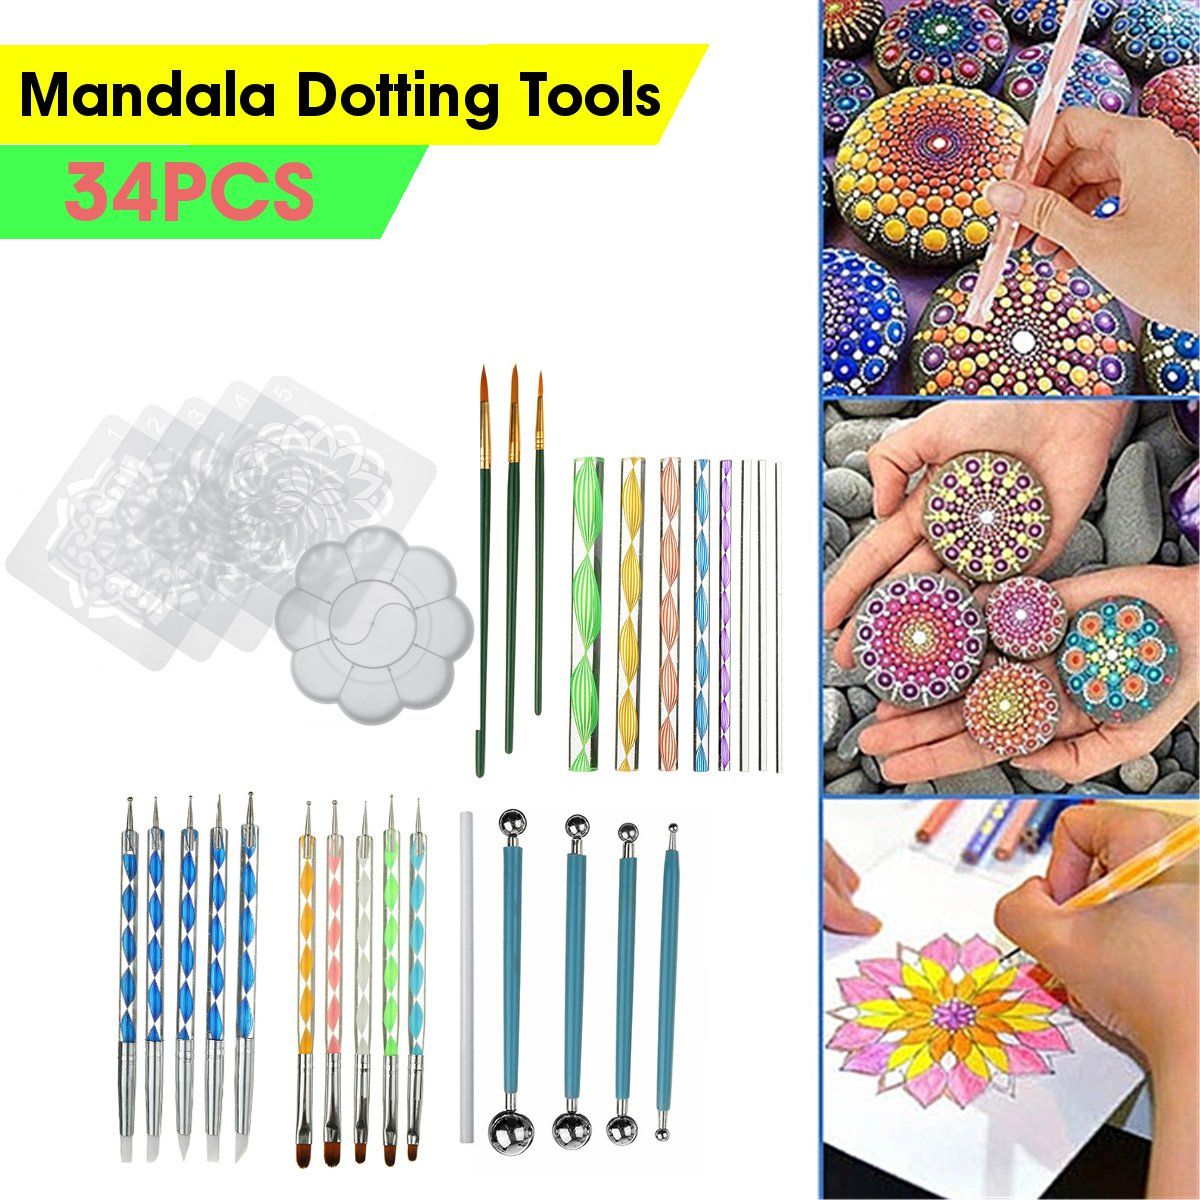 34pcs-Mandala-Dotting-Tools-SET-Rock-stone-dot-Art-Painting-Pen-Paint-Stencil-1688982